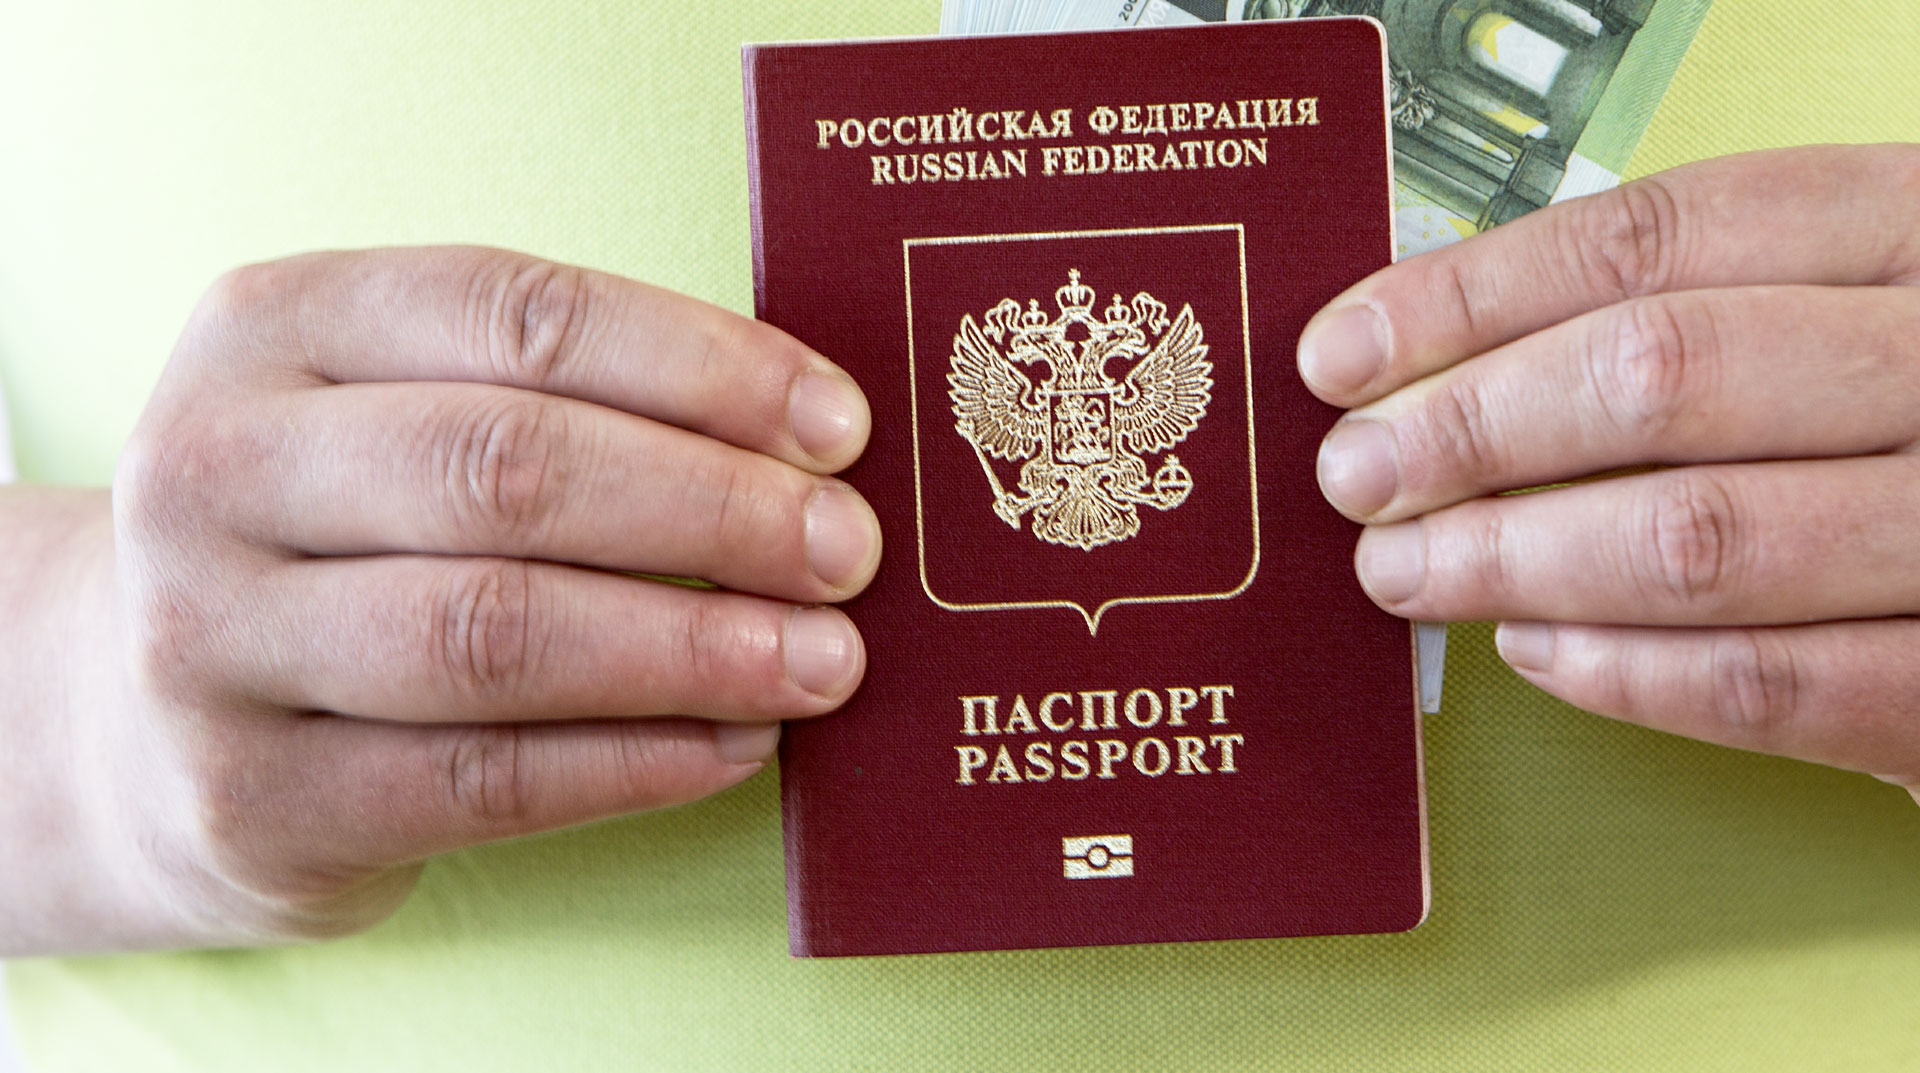 Киев готов принимать россиян, но только по биометрическим загранпаспортам undefined